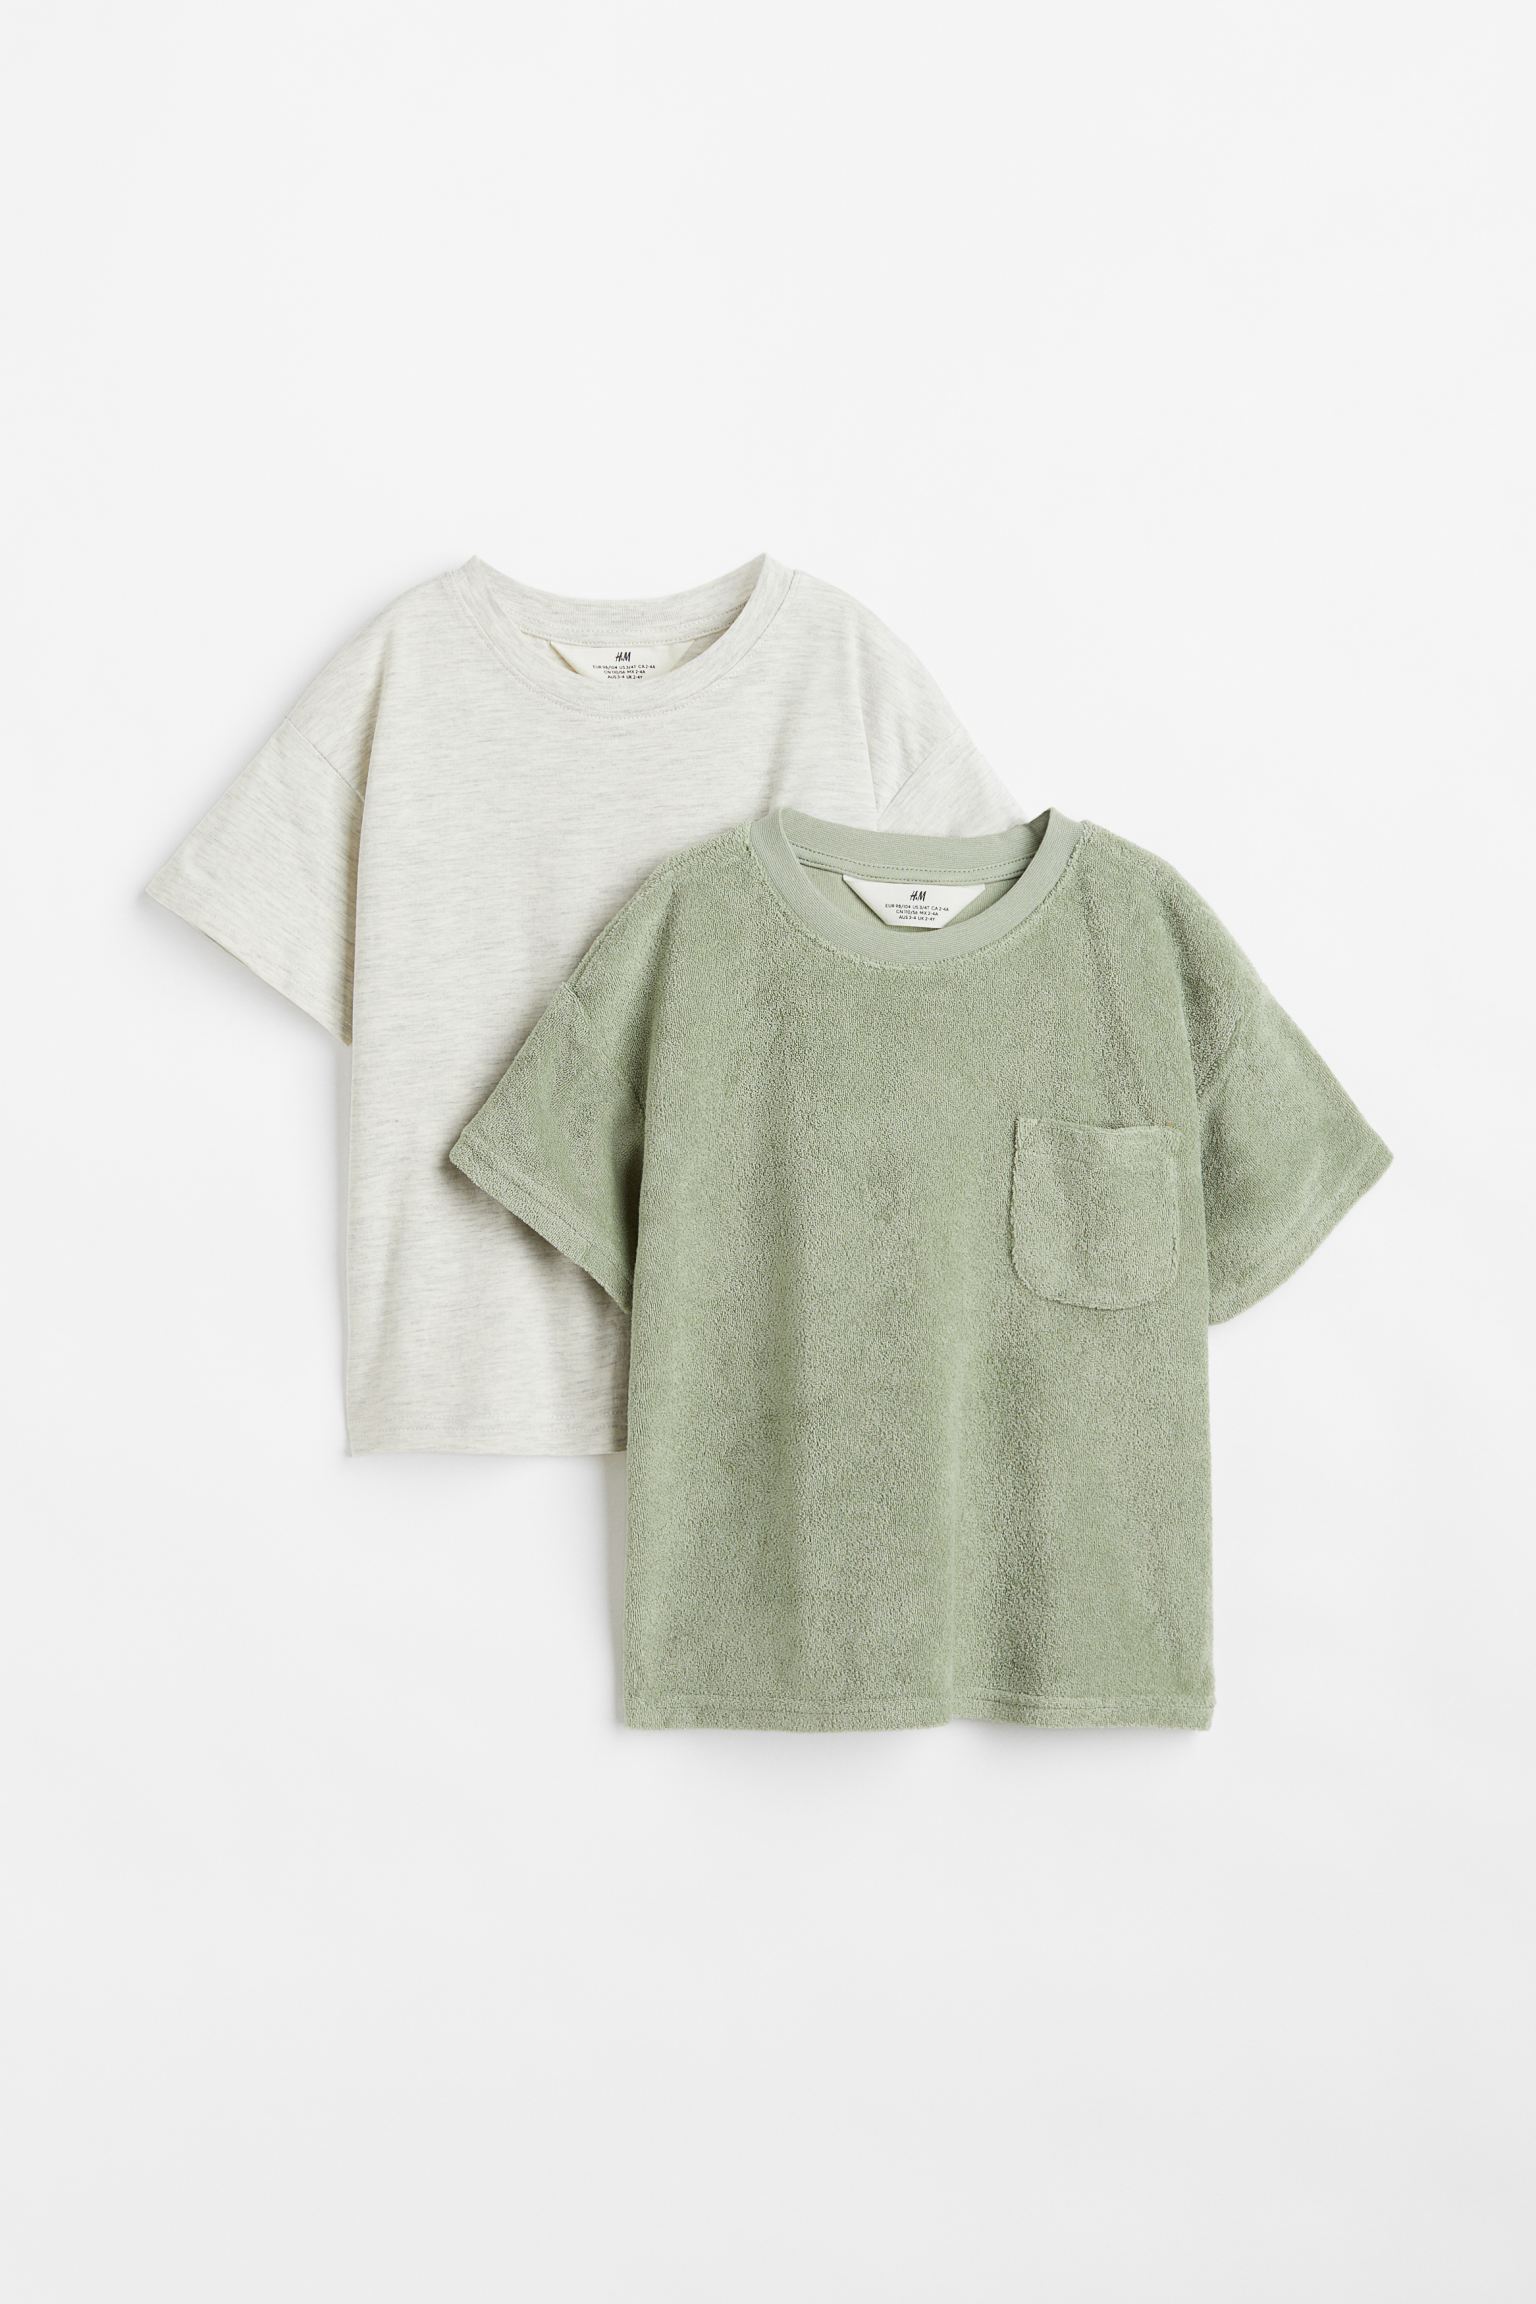 Набор футболок H&M для мальчиков, зелёный, серый-001, размер 122/128, 1078766001, 2 шт.